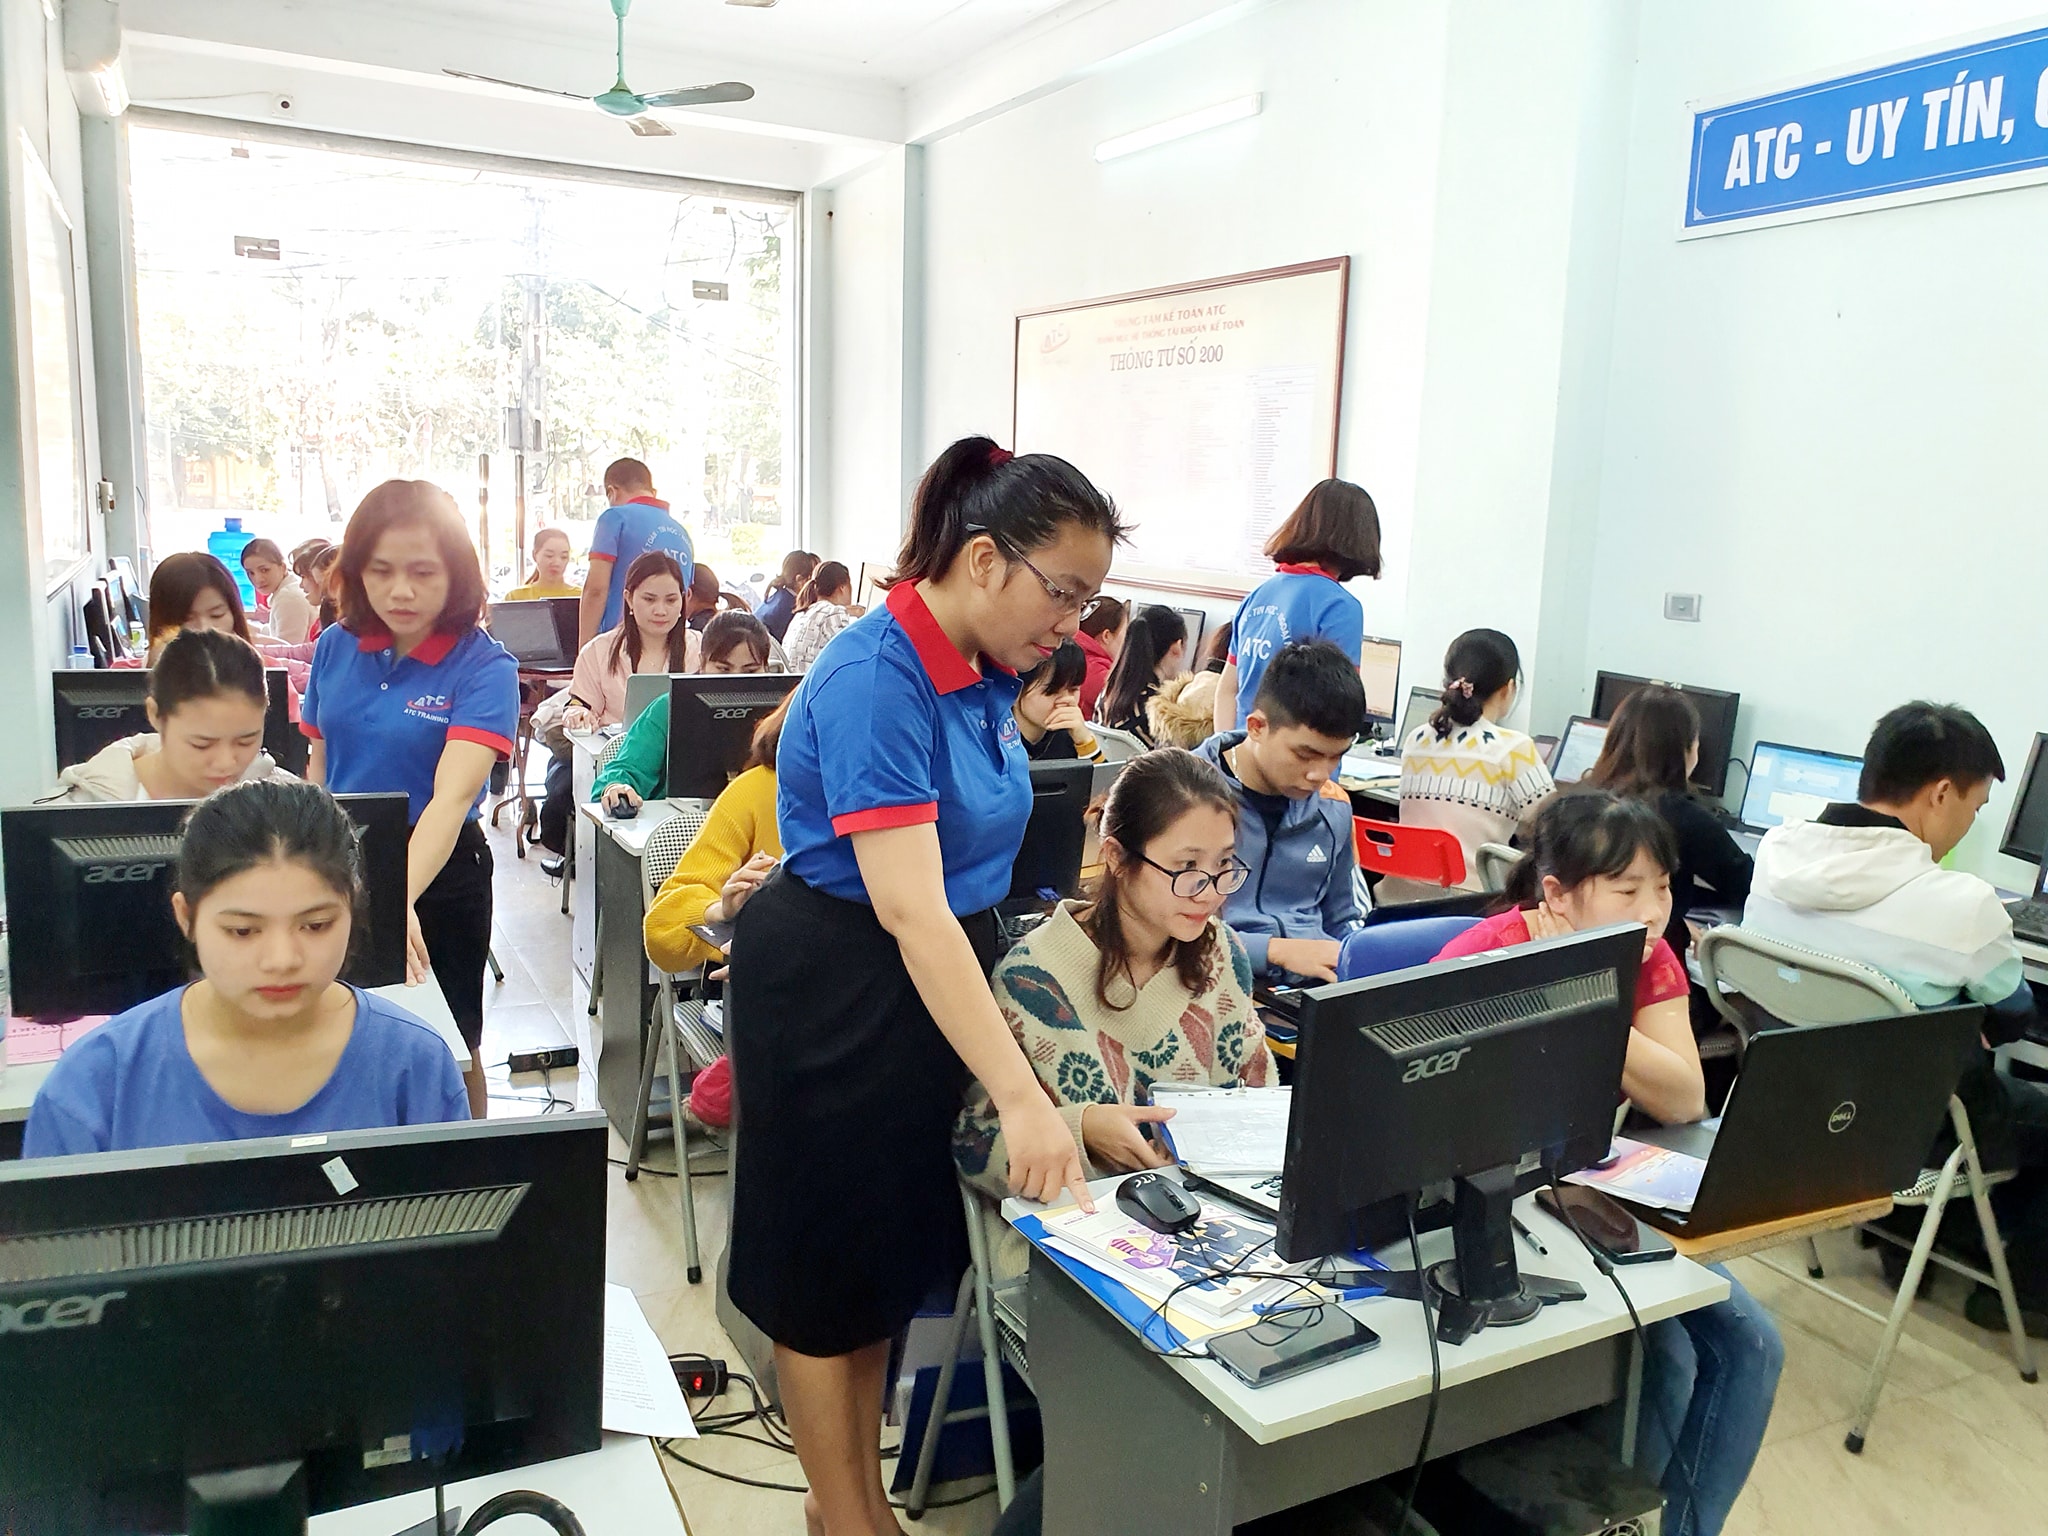 Địa chỉ học kế toán tại Thanh Hóa giúp các bạn học viên có nhu cầu học kế toán thực tế ở Thanh Hóa có thêm nhiều cơ hội học tập, trau dồi